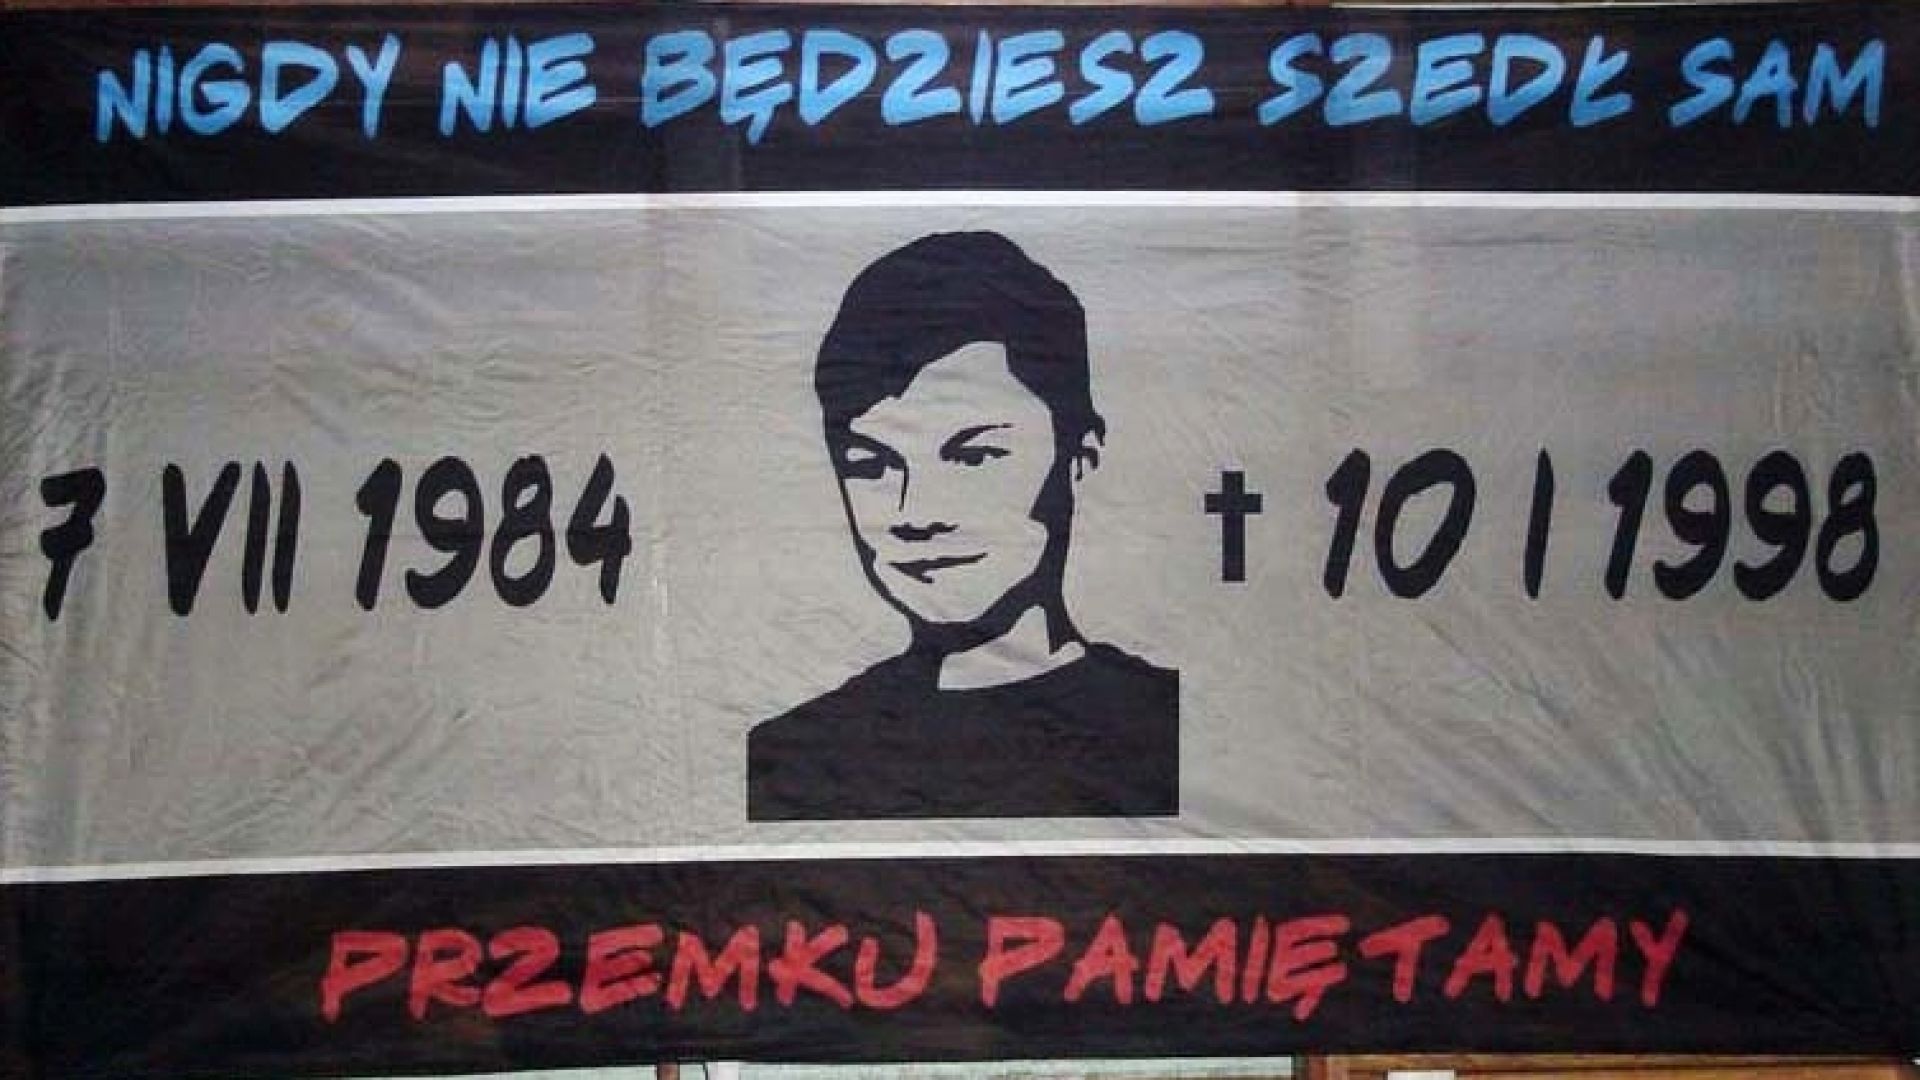 24 года назад в Польше случилась своя Манежка — так фанаты отреагировали на убийство полицейским 13-летнего болельщика